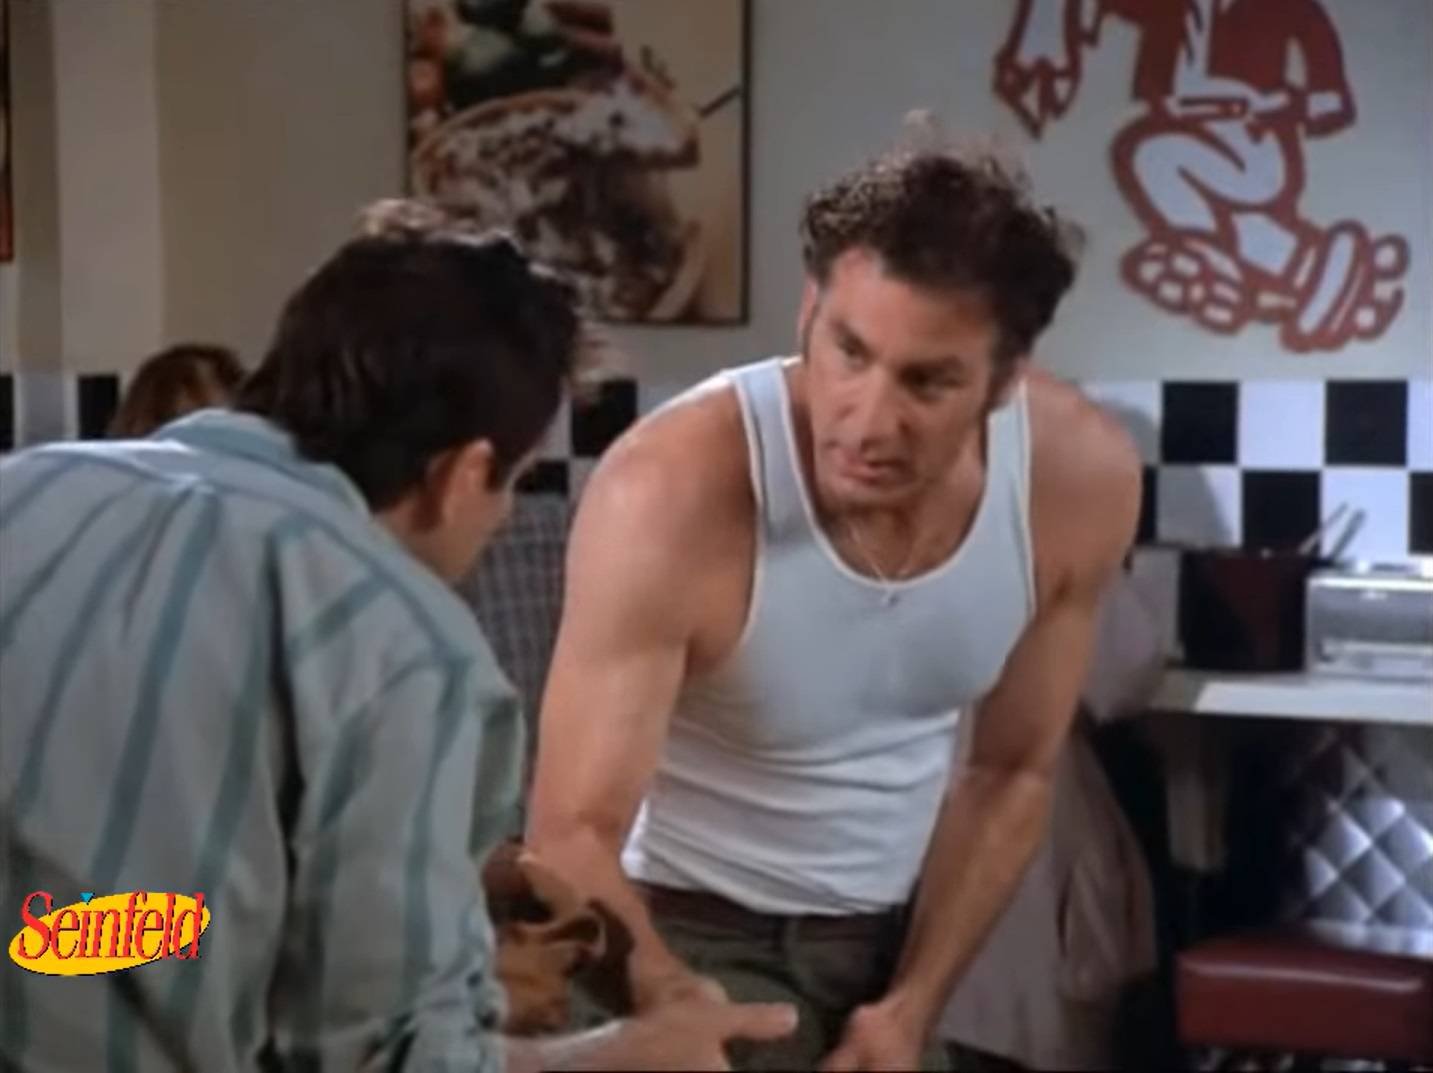 Kramer iz kultne serije Seinfeld stvarno postoji, a svoju je slavu komičar odlučio i dobro unovčiti